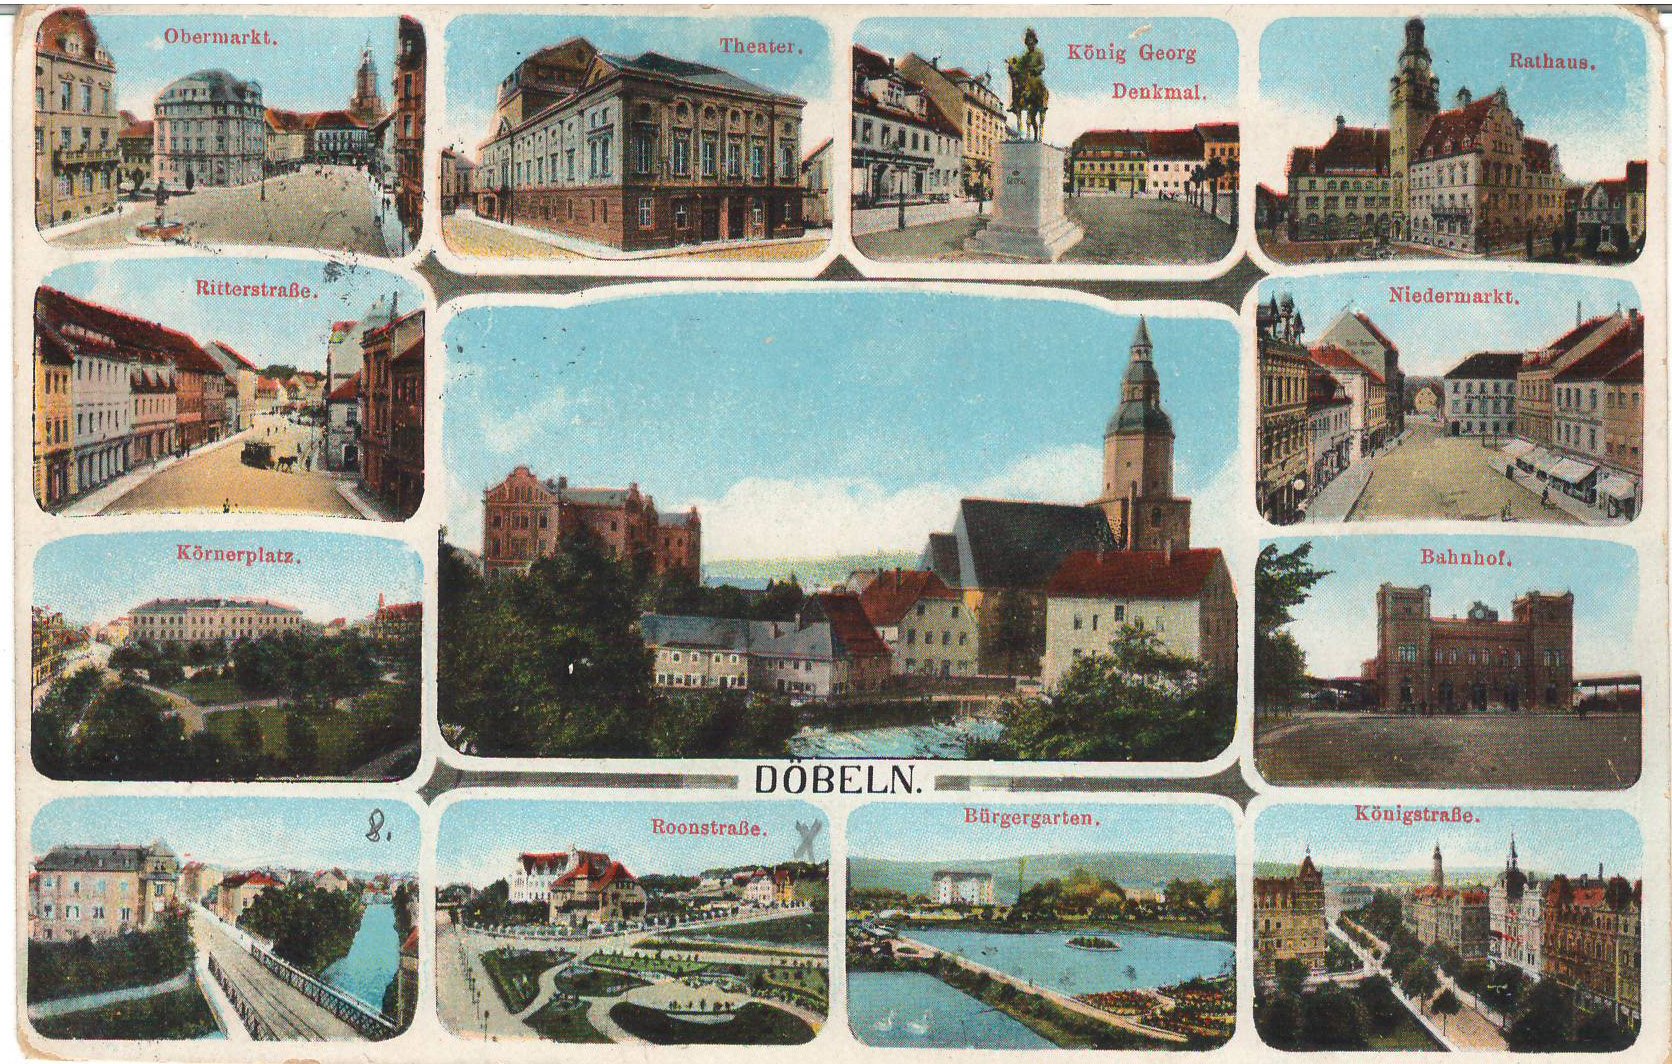 Ansichtspostkarte Döbeln: Verschiedene Stadtansichten (Stadtmuseum / Kleine Galerie Döbeln CC BY-NC-SA)